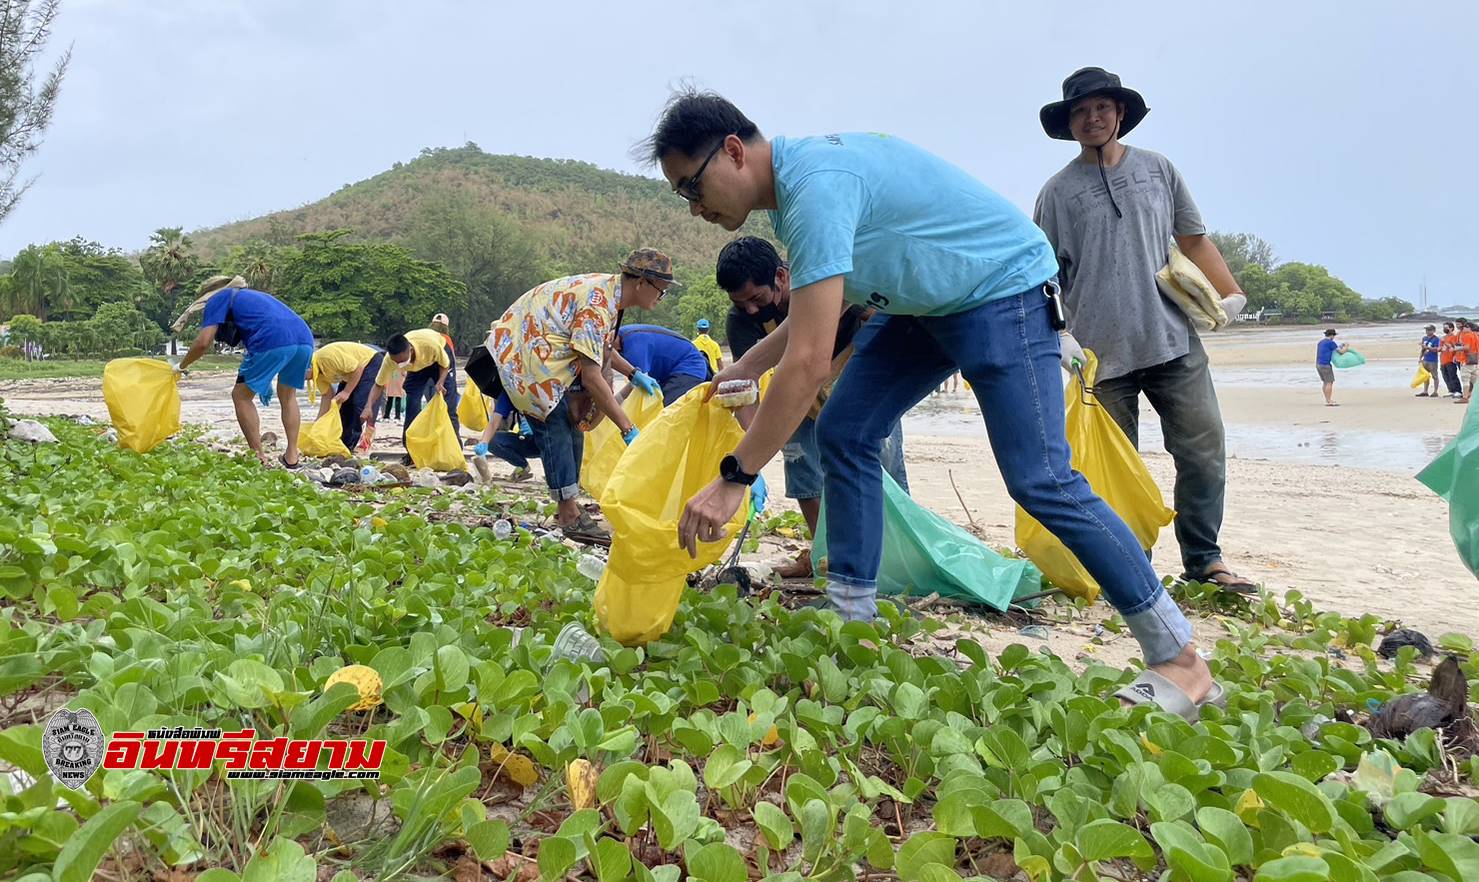 ชลบุรี-ทรภ.1 ร่วม บริษัท ลูซี่ อิเล็คทริค ประเทศไทย เก็บขยะชาดหาดดงตาล ฟื้นฟูสภาพแวดล้อมในทะเล